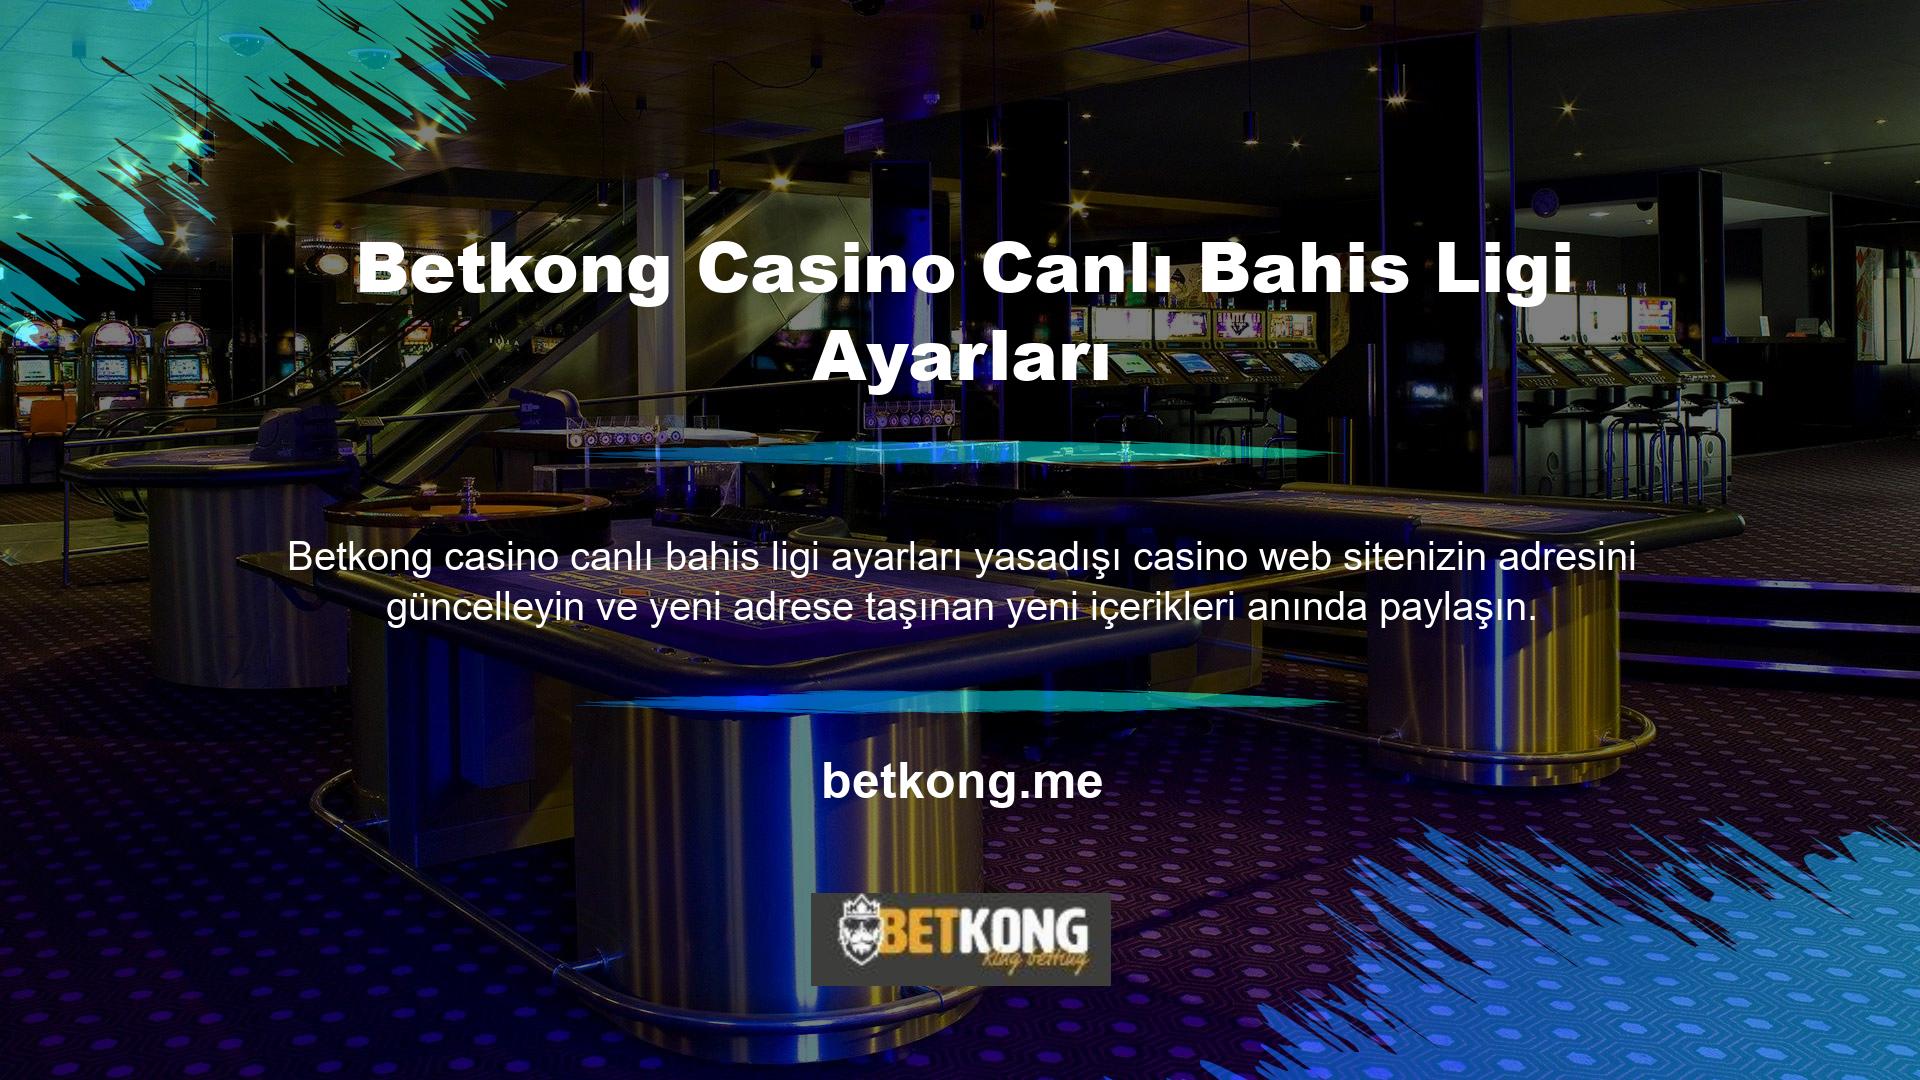 Betkong Casino Canlı Bahis Ligi ayarları yeni kayıtlı adres olarak onaylanmıştır